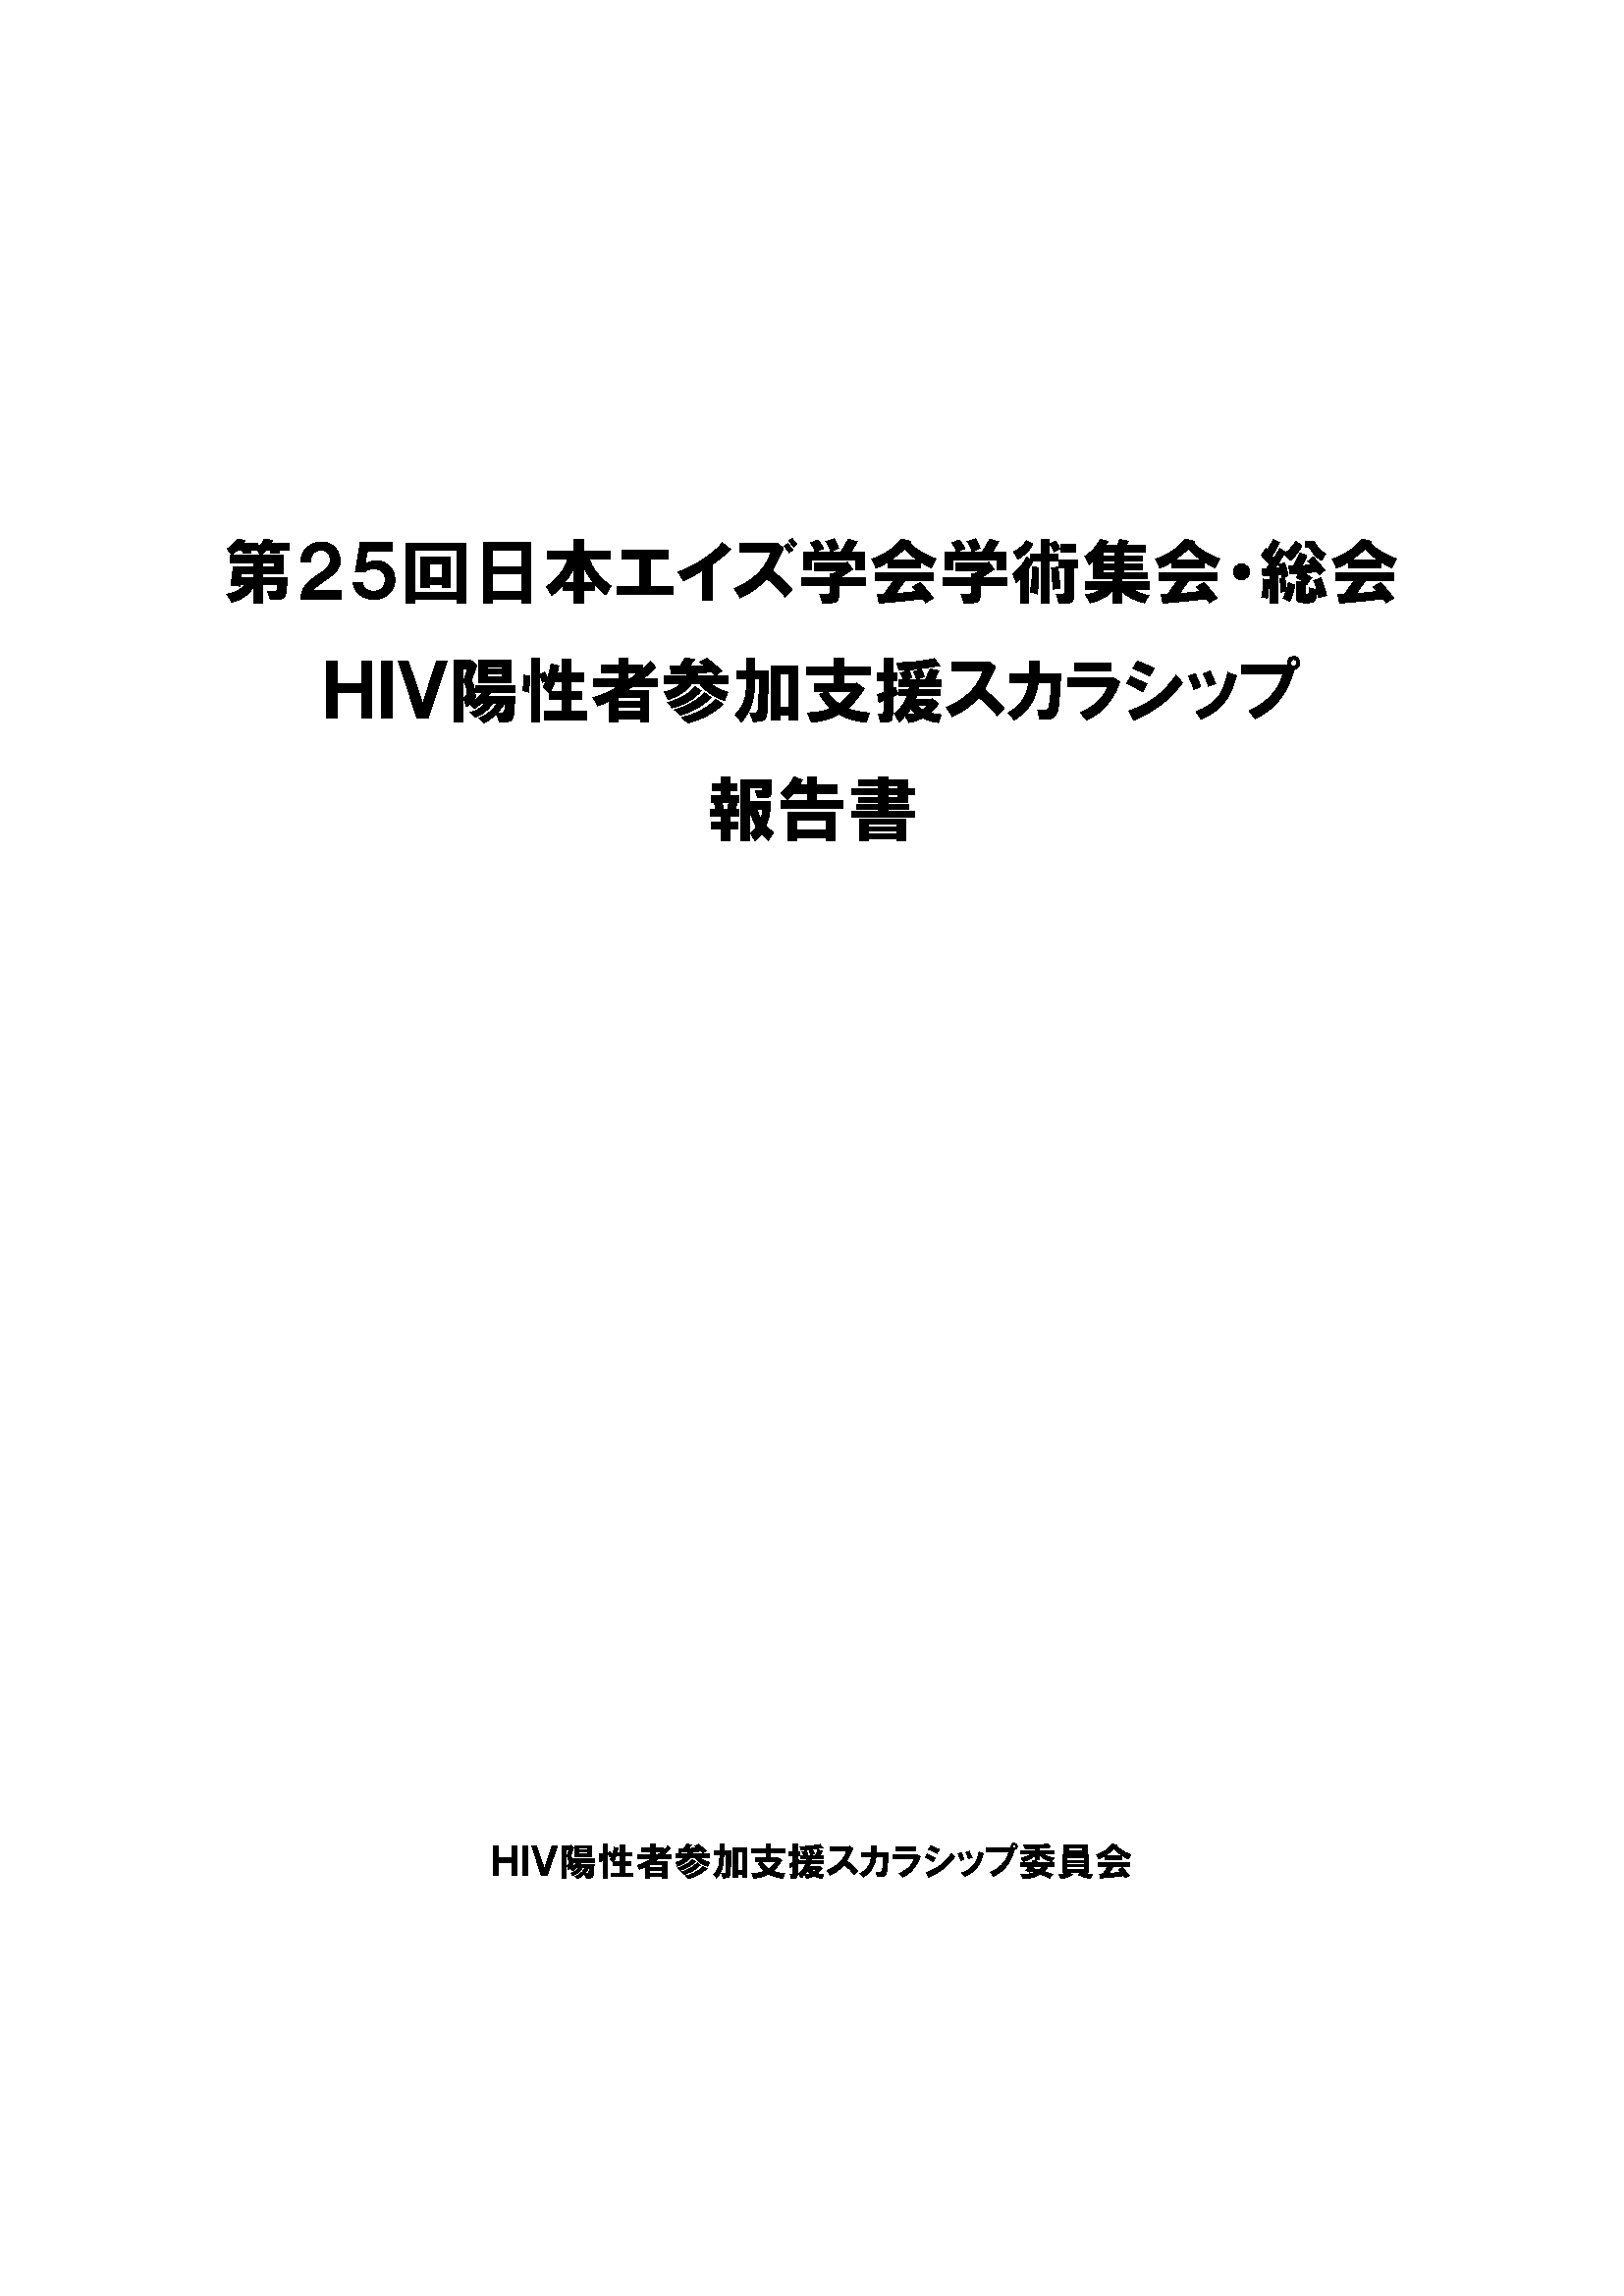 第25回日本エイズ学会総会・学術集会 HIV陽性者参加支援スカラシップ 報告書